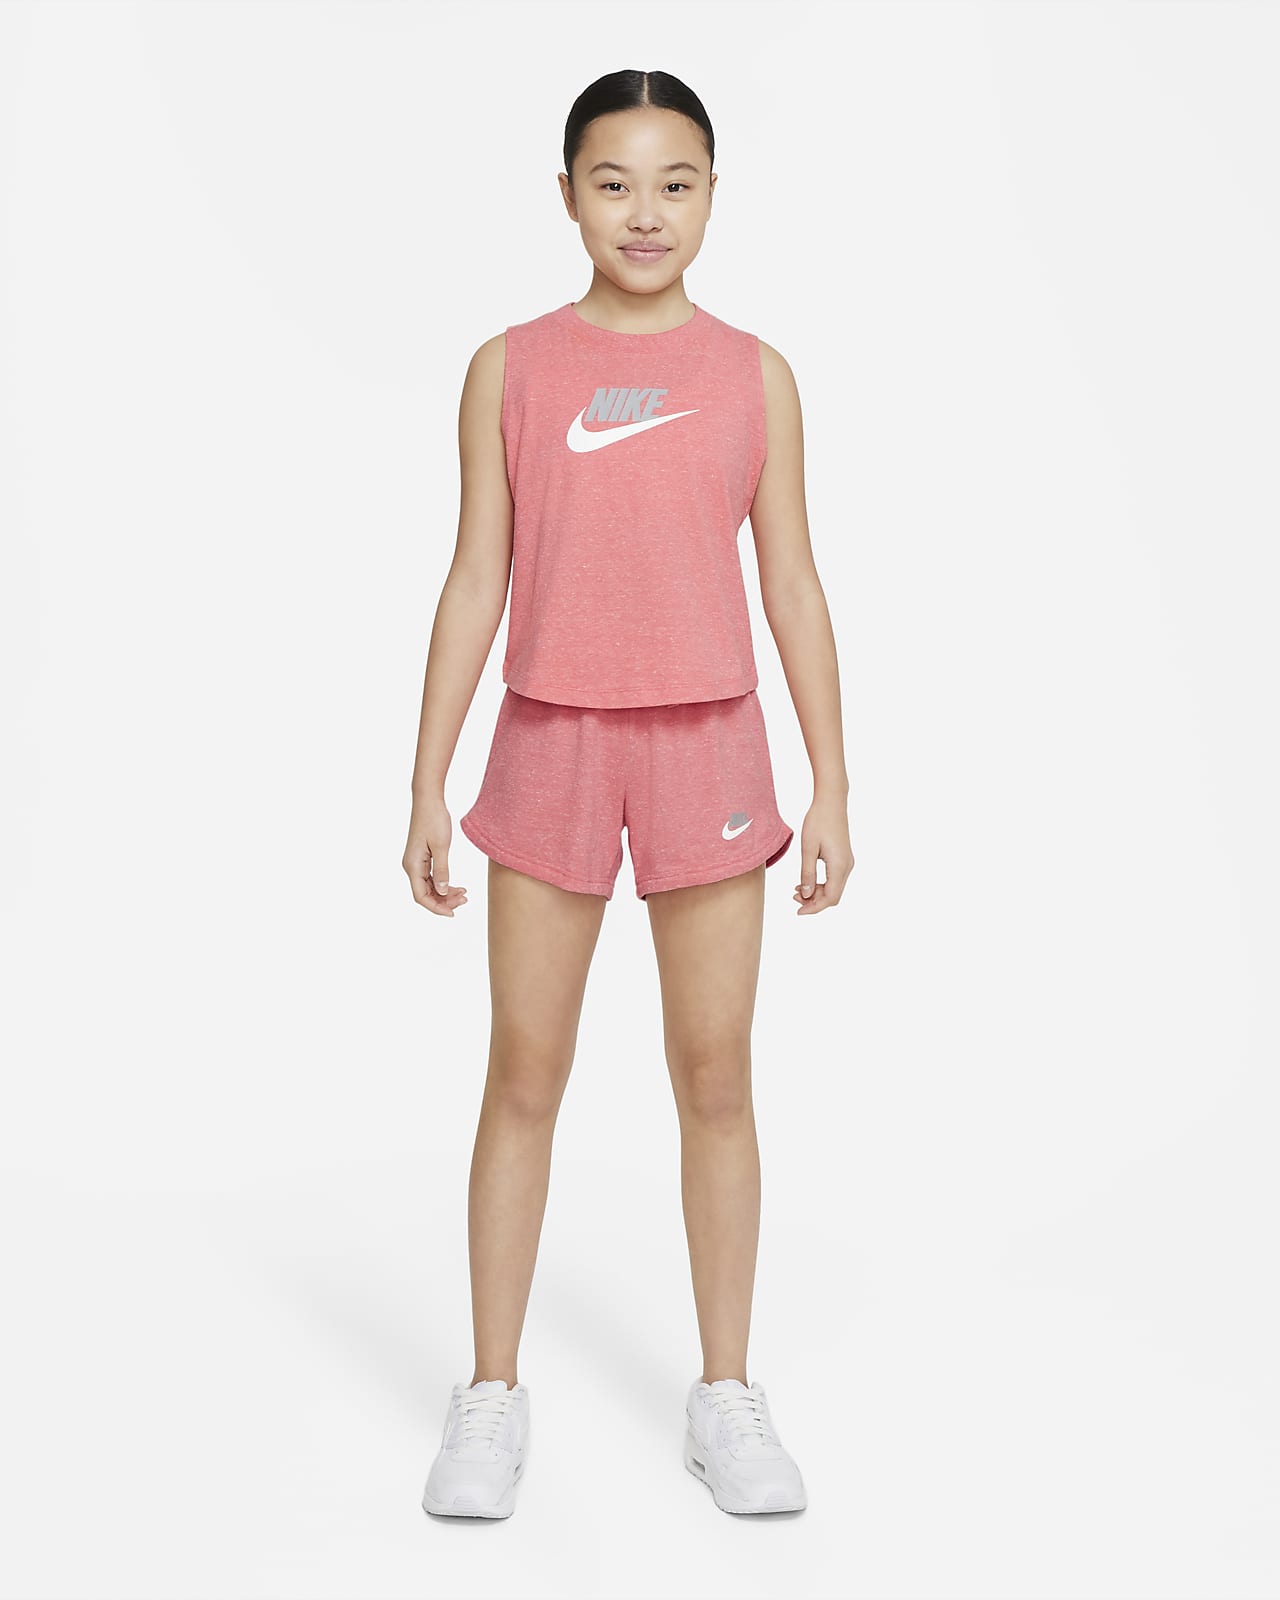 Nike Sportswear Kids' Jersey Tank. Nike.com